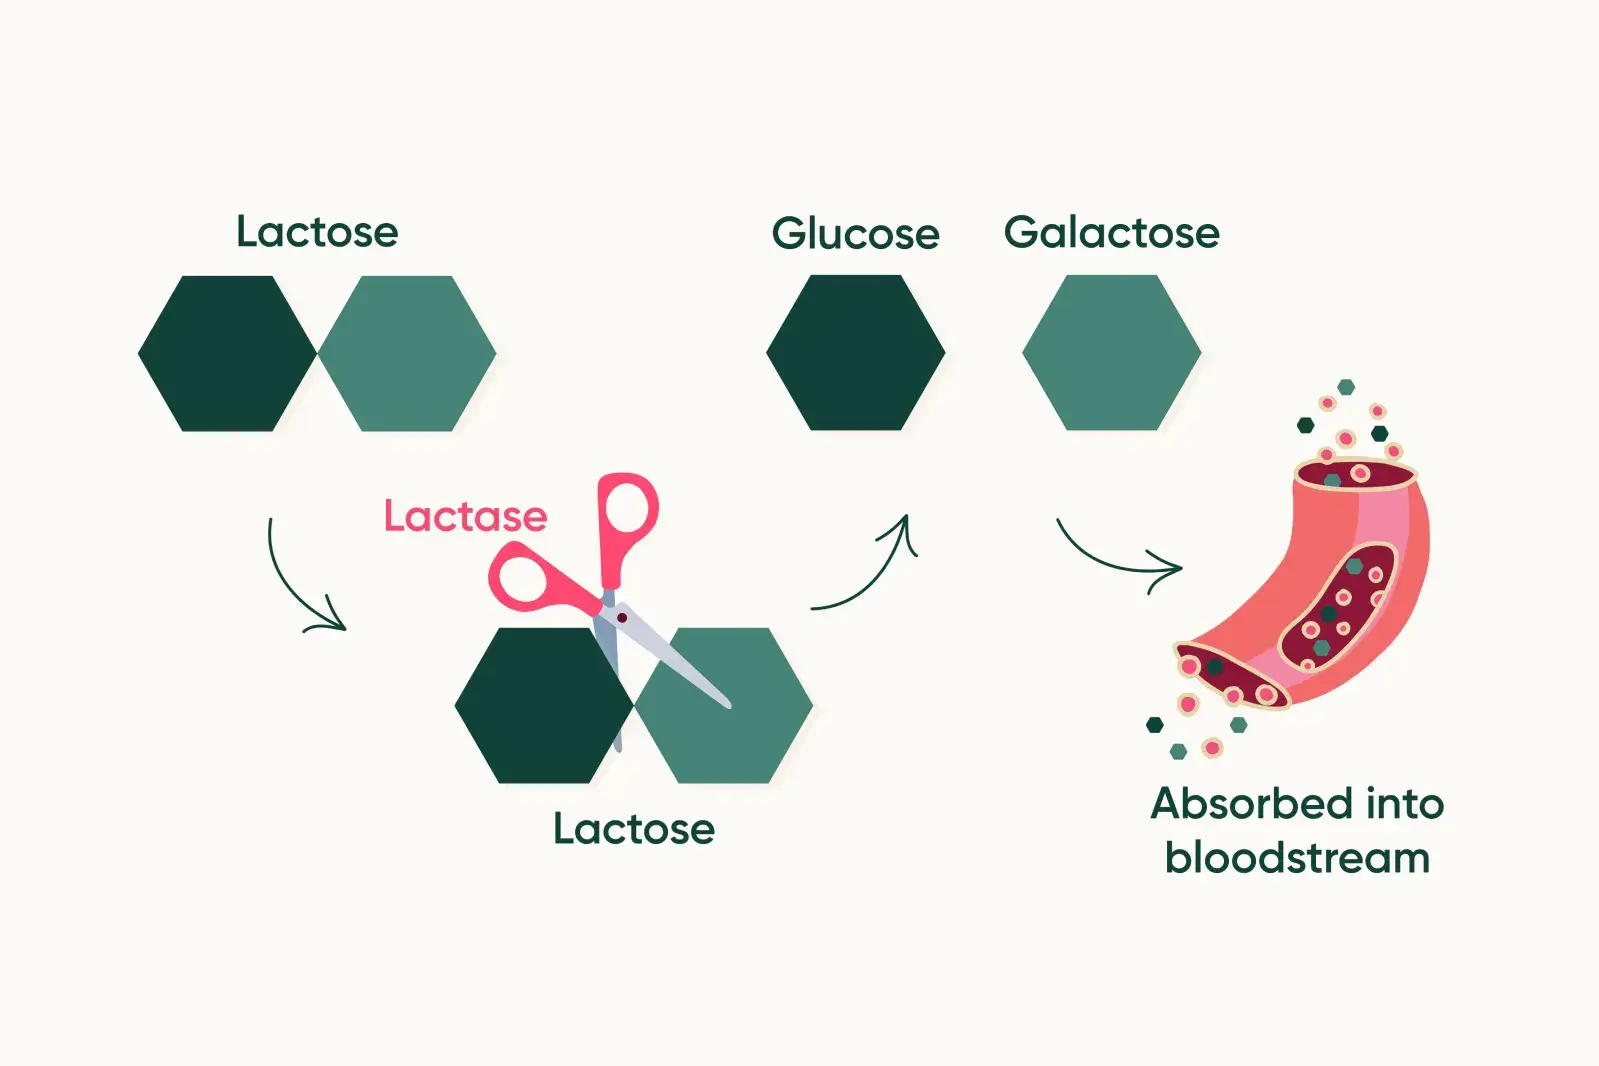 How lactose is broken down